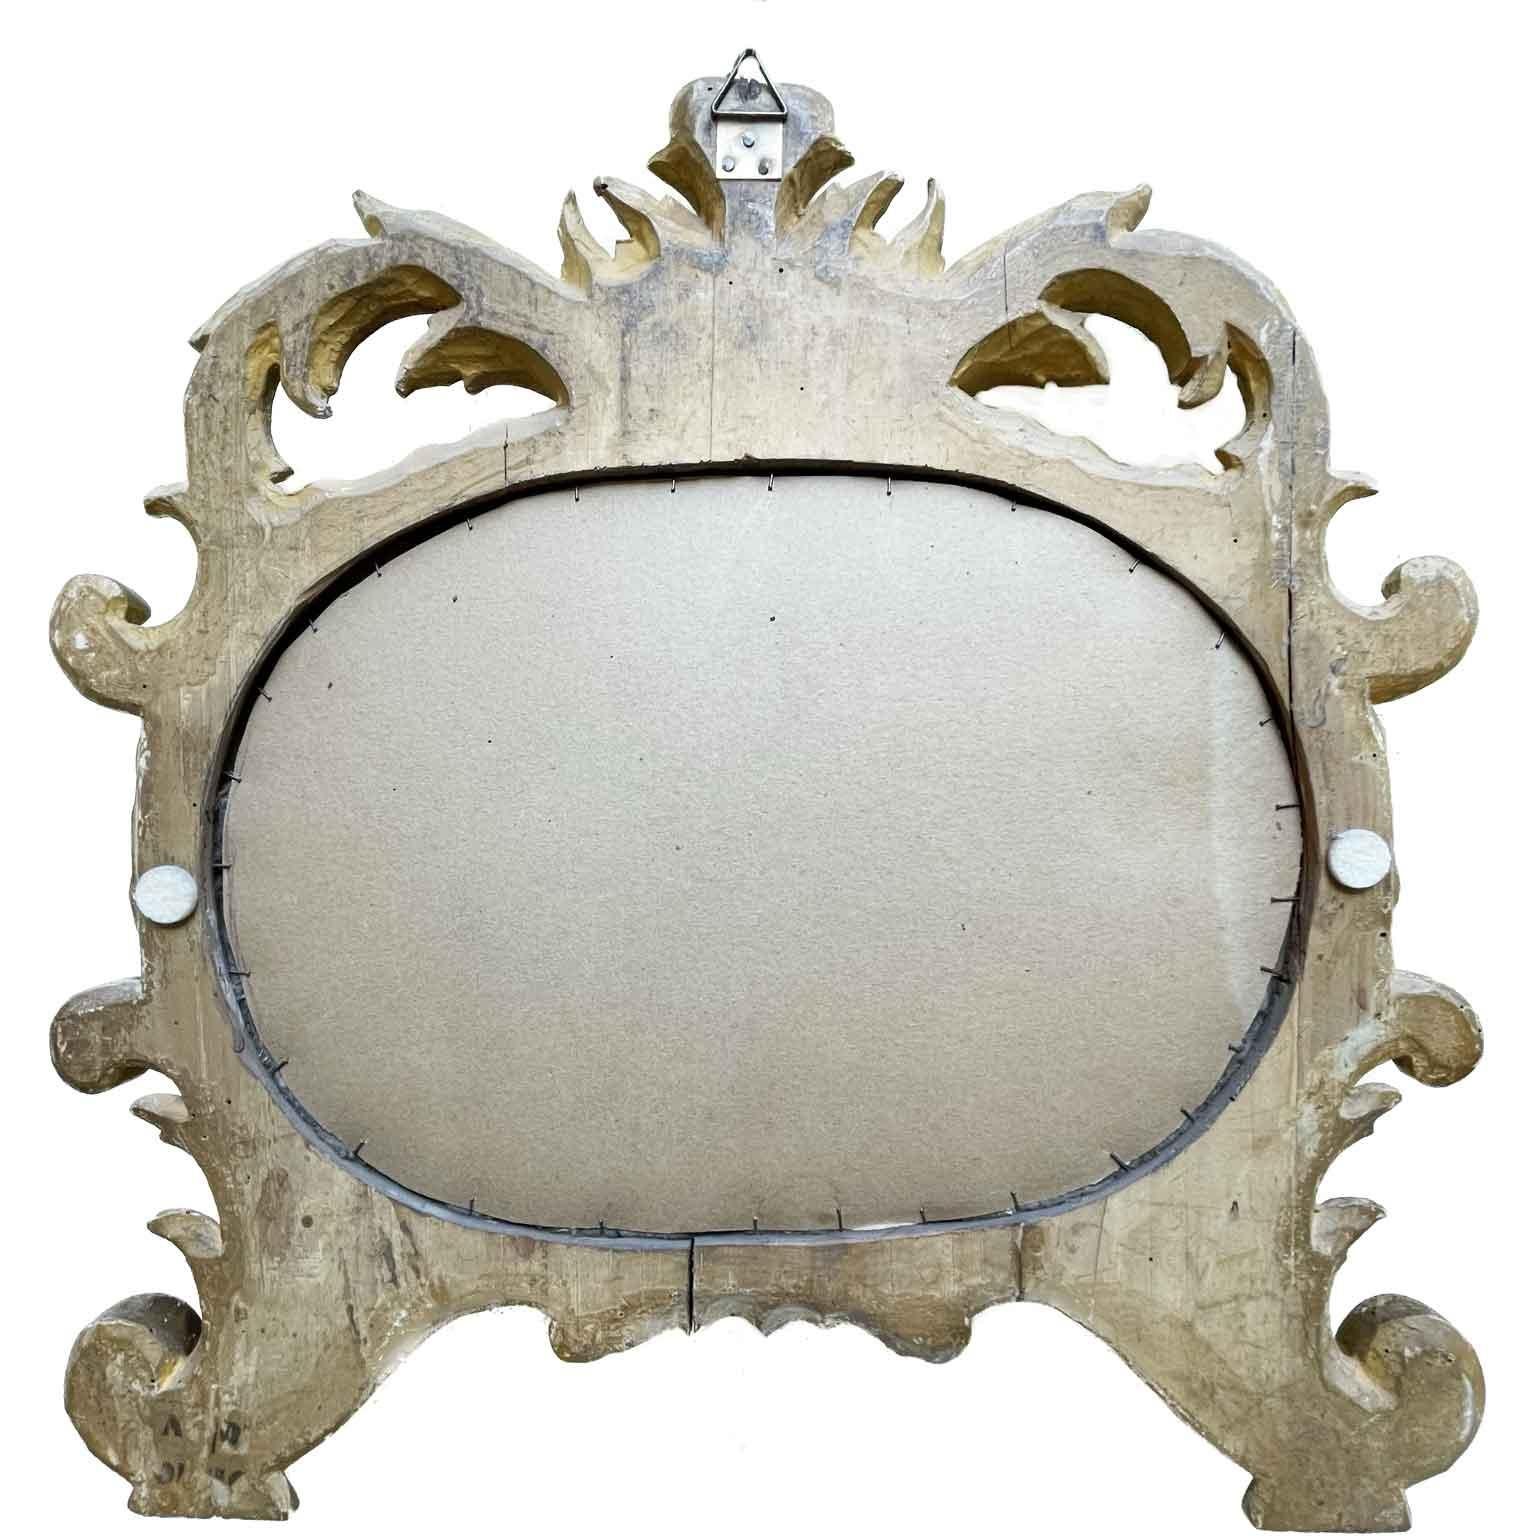 Mercury Glass Specchio Dorato Italiano 1750 circa Cartagloria Ovale Luigi XV Intaglio Fogliato For Sale